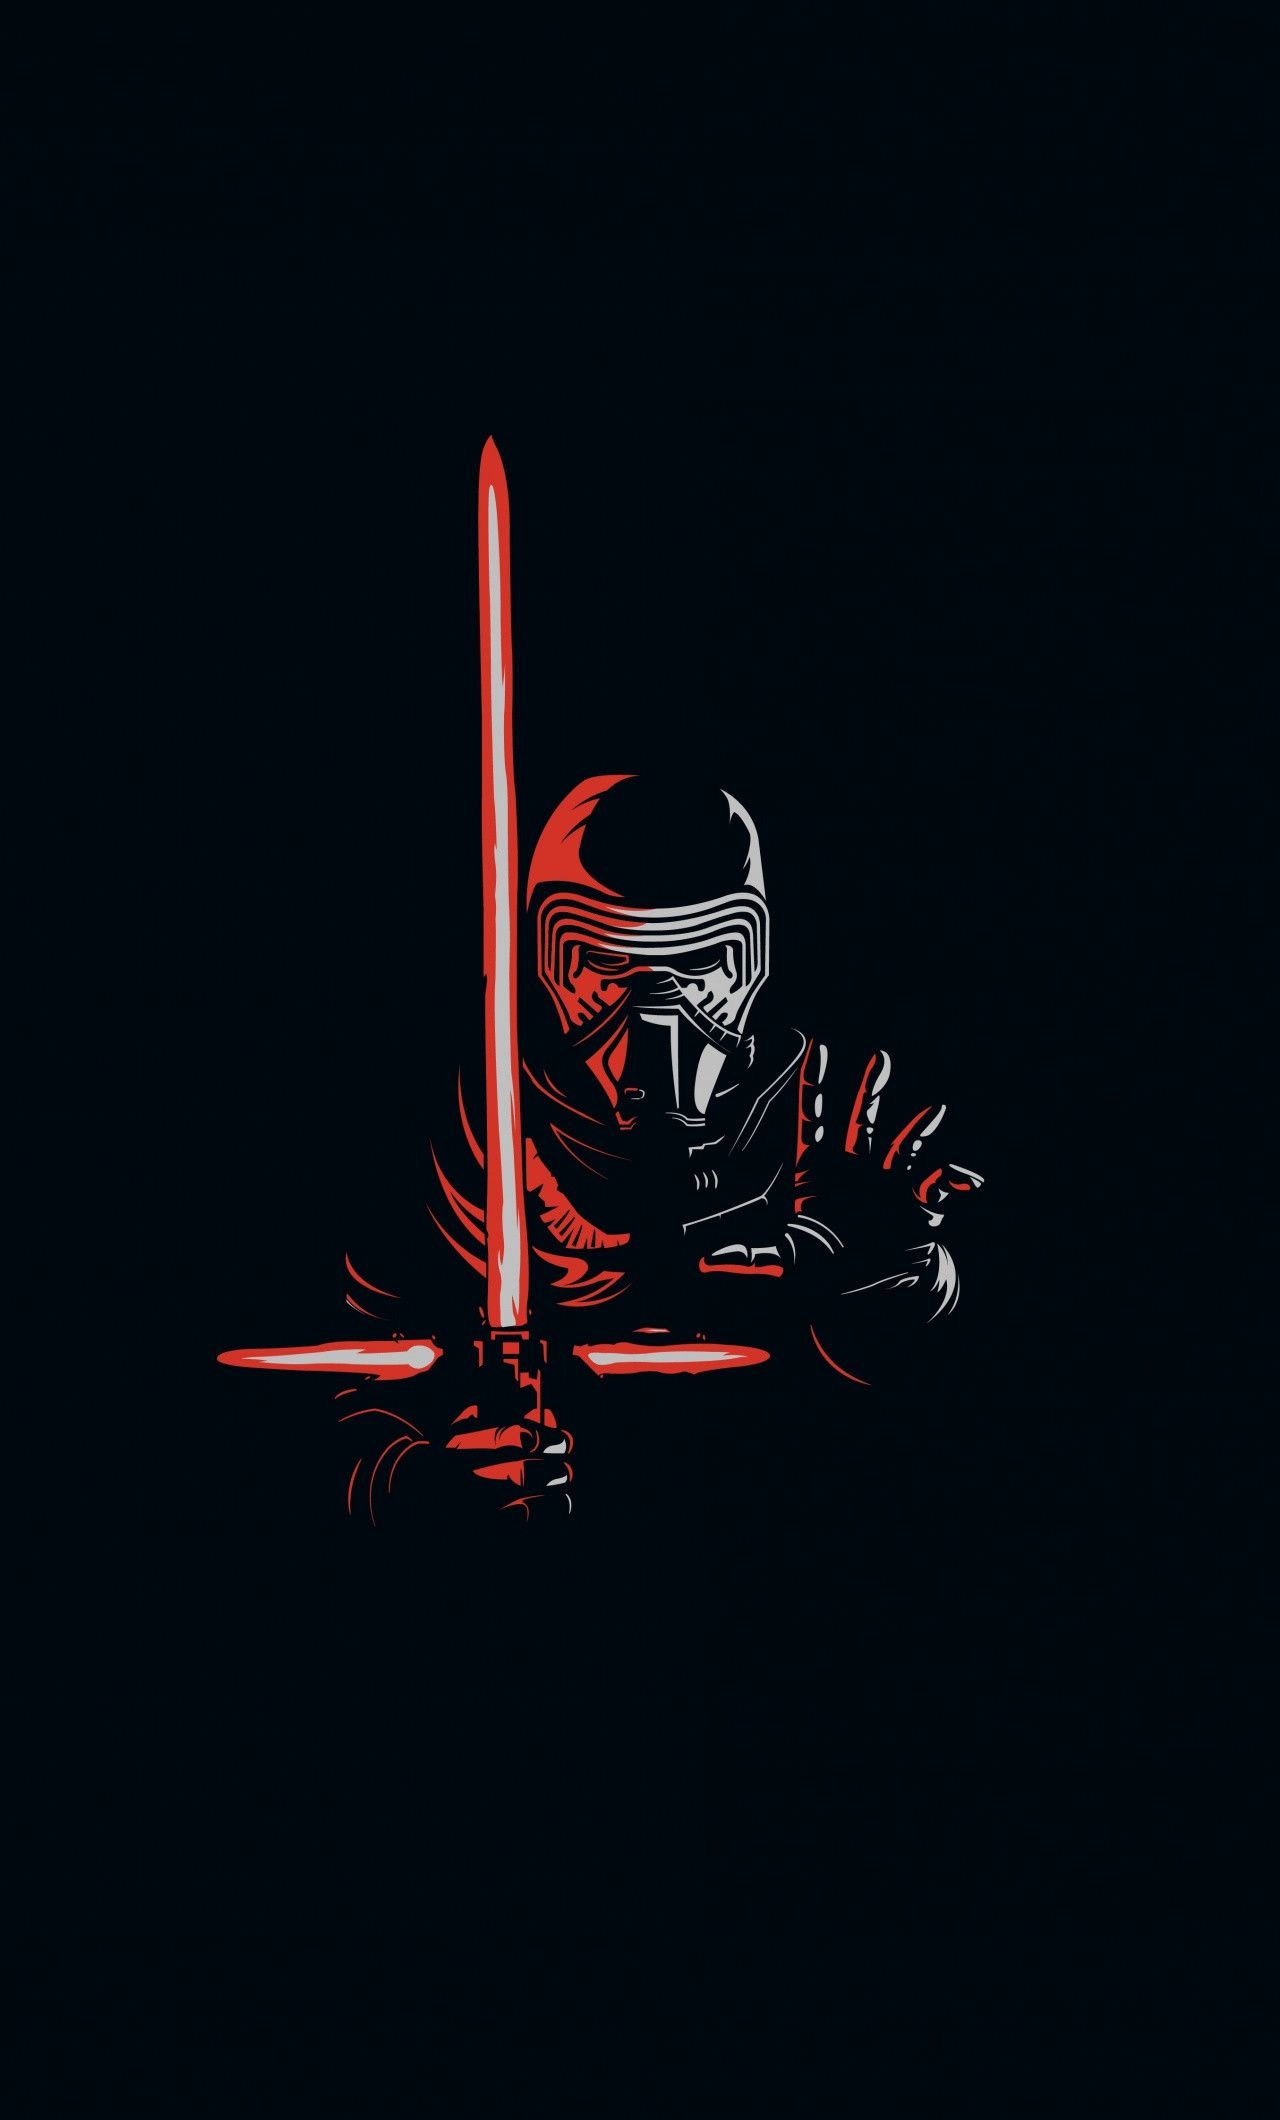 Kylo Ren Mask, Lightsaber duels, Red lightsaber masterpiece, Masked menace, 1280x2120 HD Handy